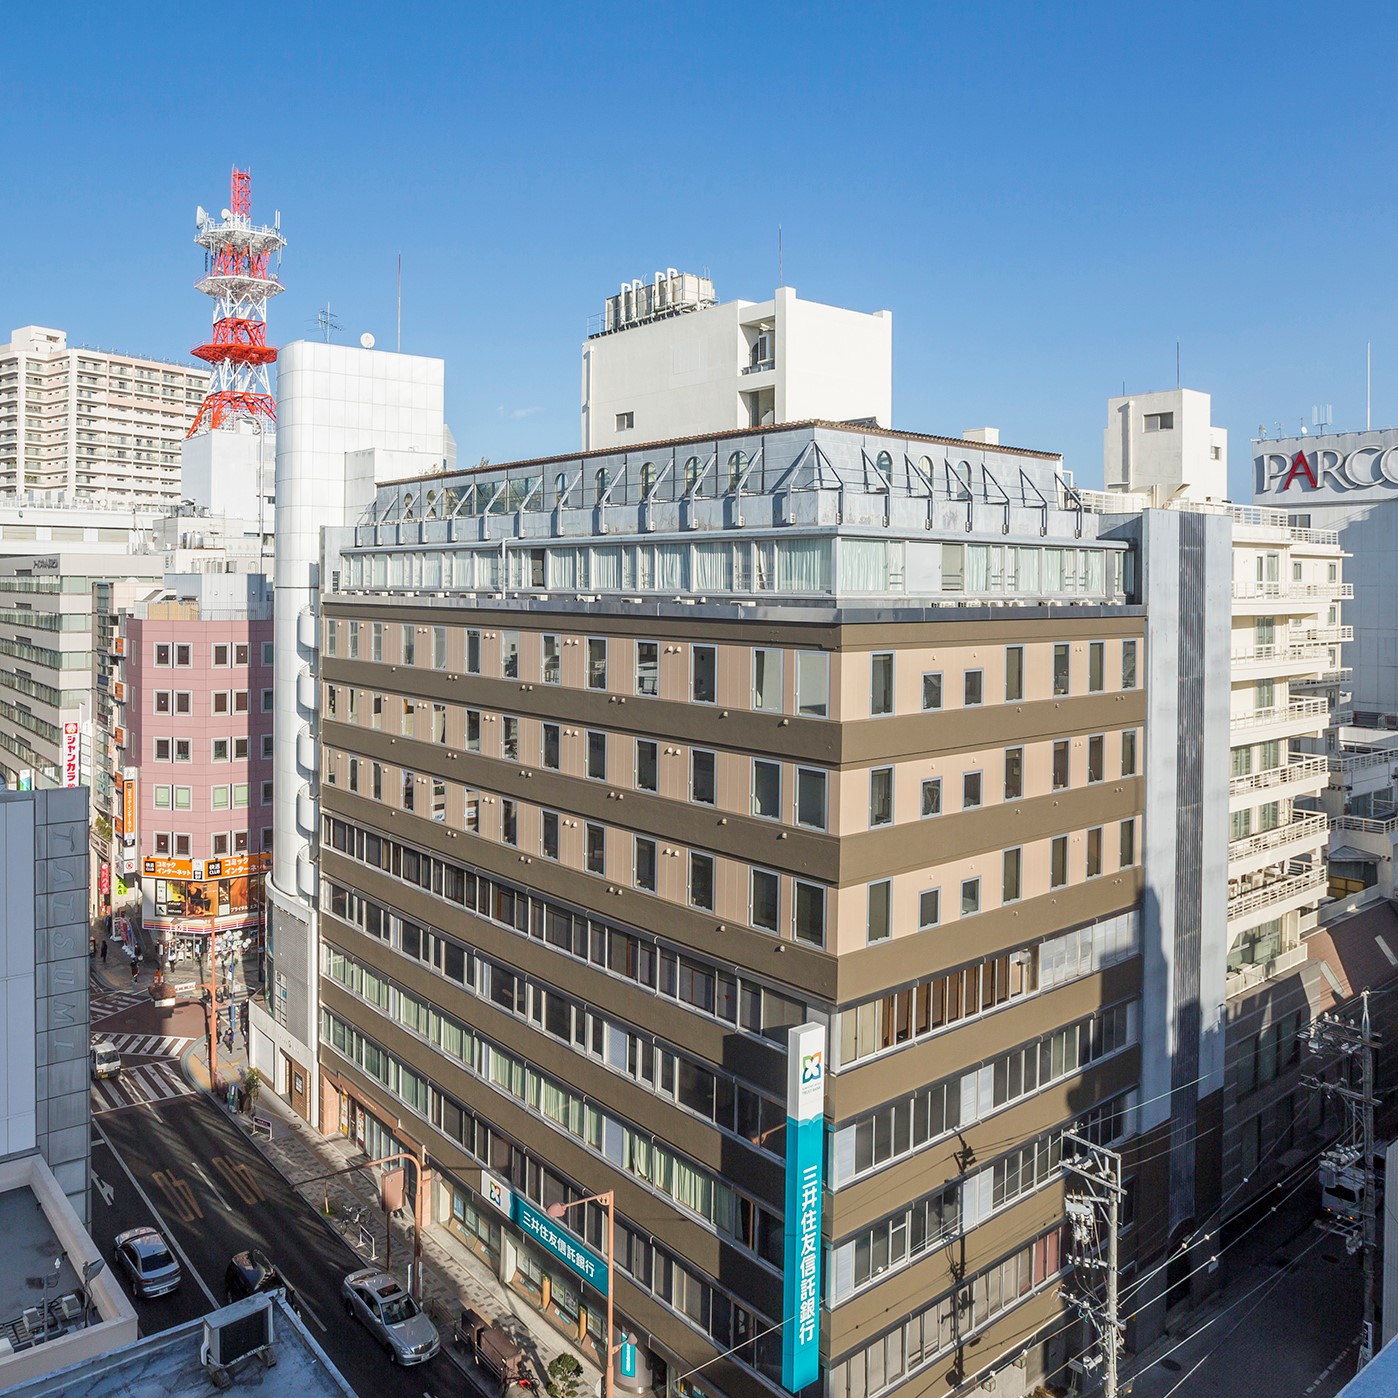 JR静岡駅より徒歩5分。静岡市街中の中心に位置し、官公庁のあるビジネス街にも繁華街にも近く大変便利です。